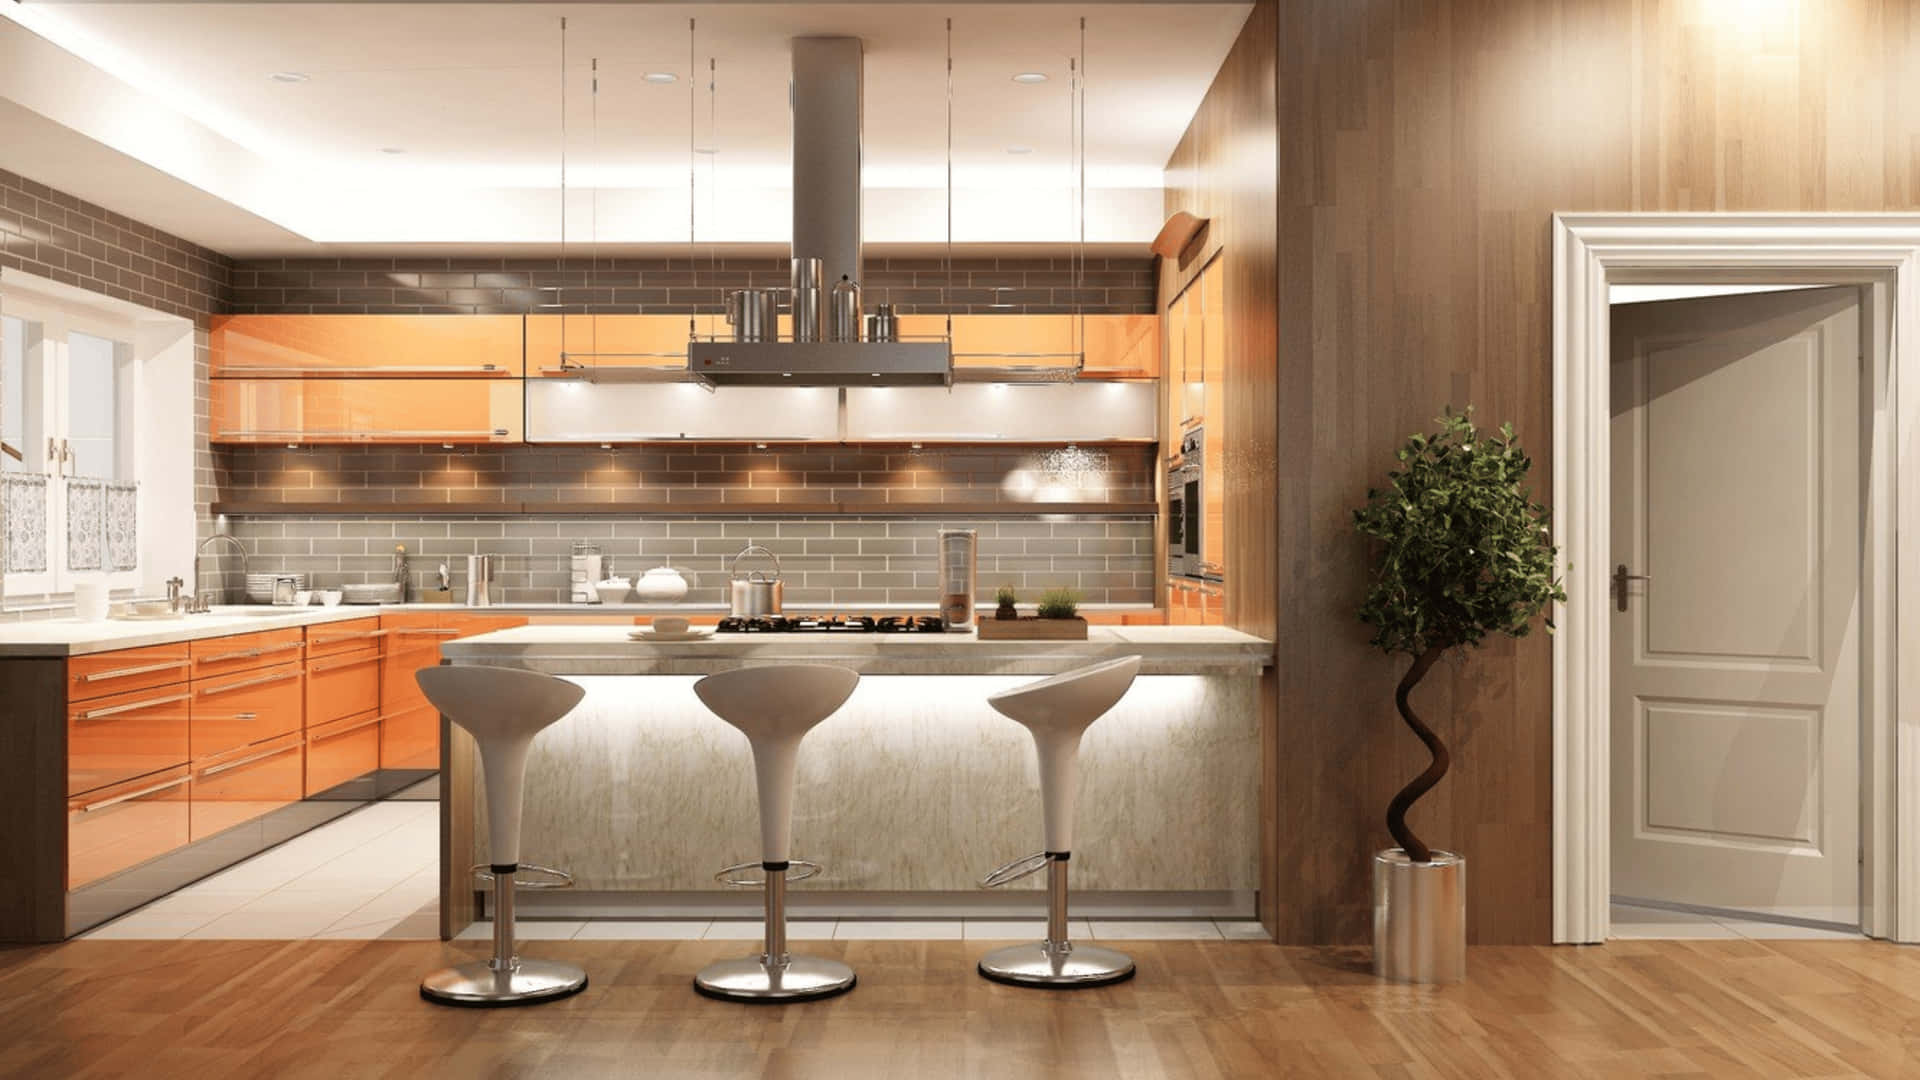 A Modernly Designed 4K Kitchen